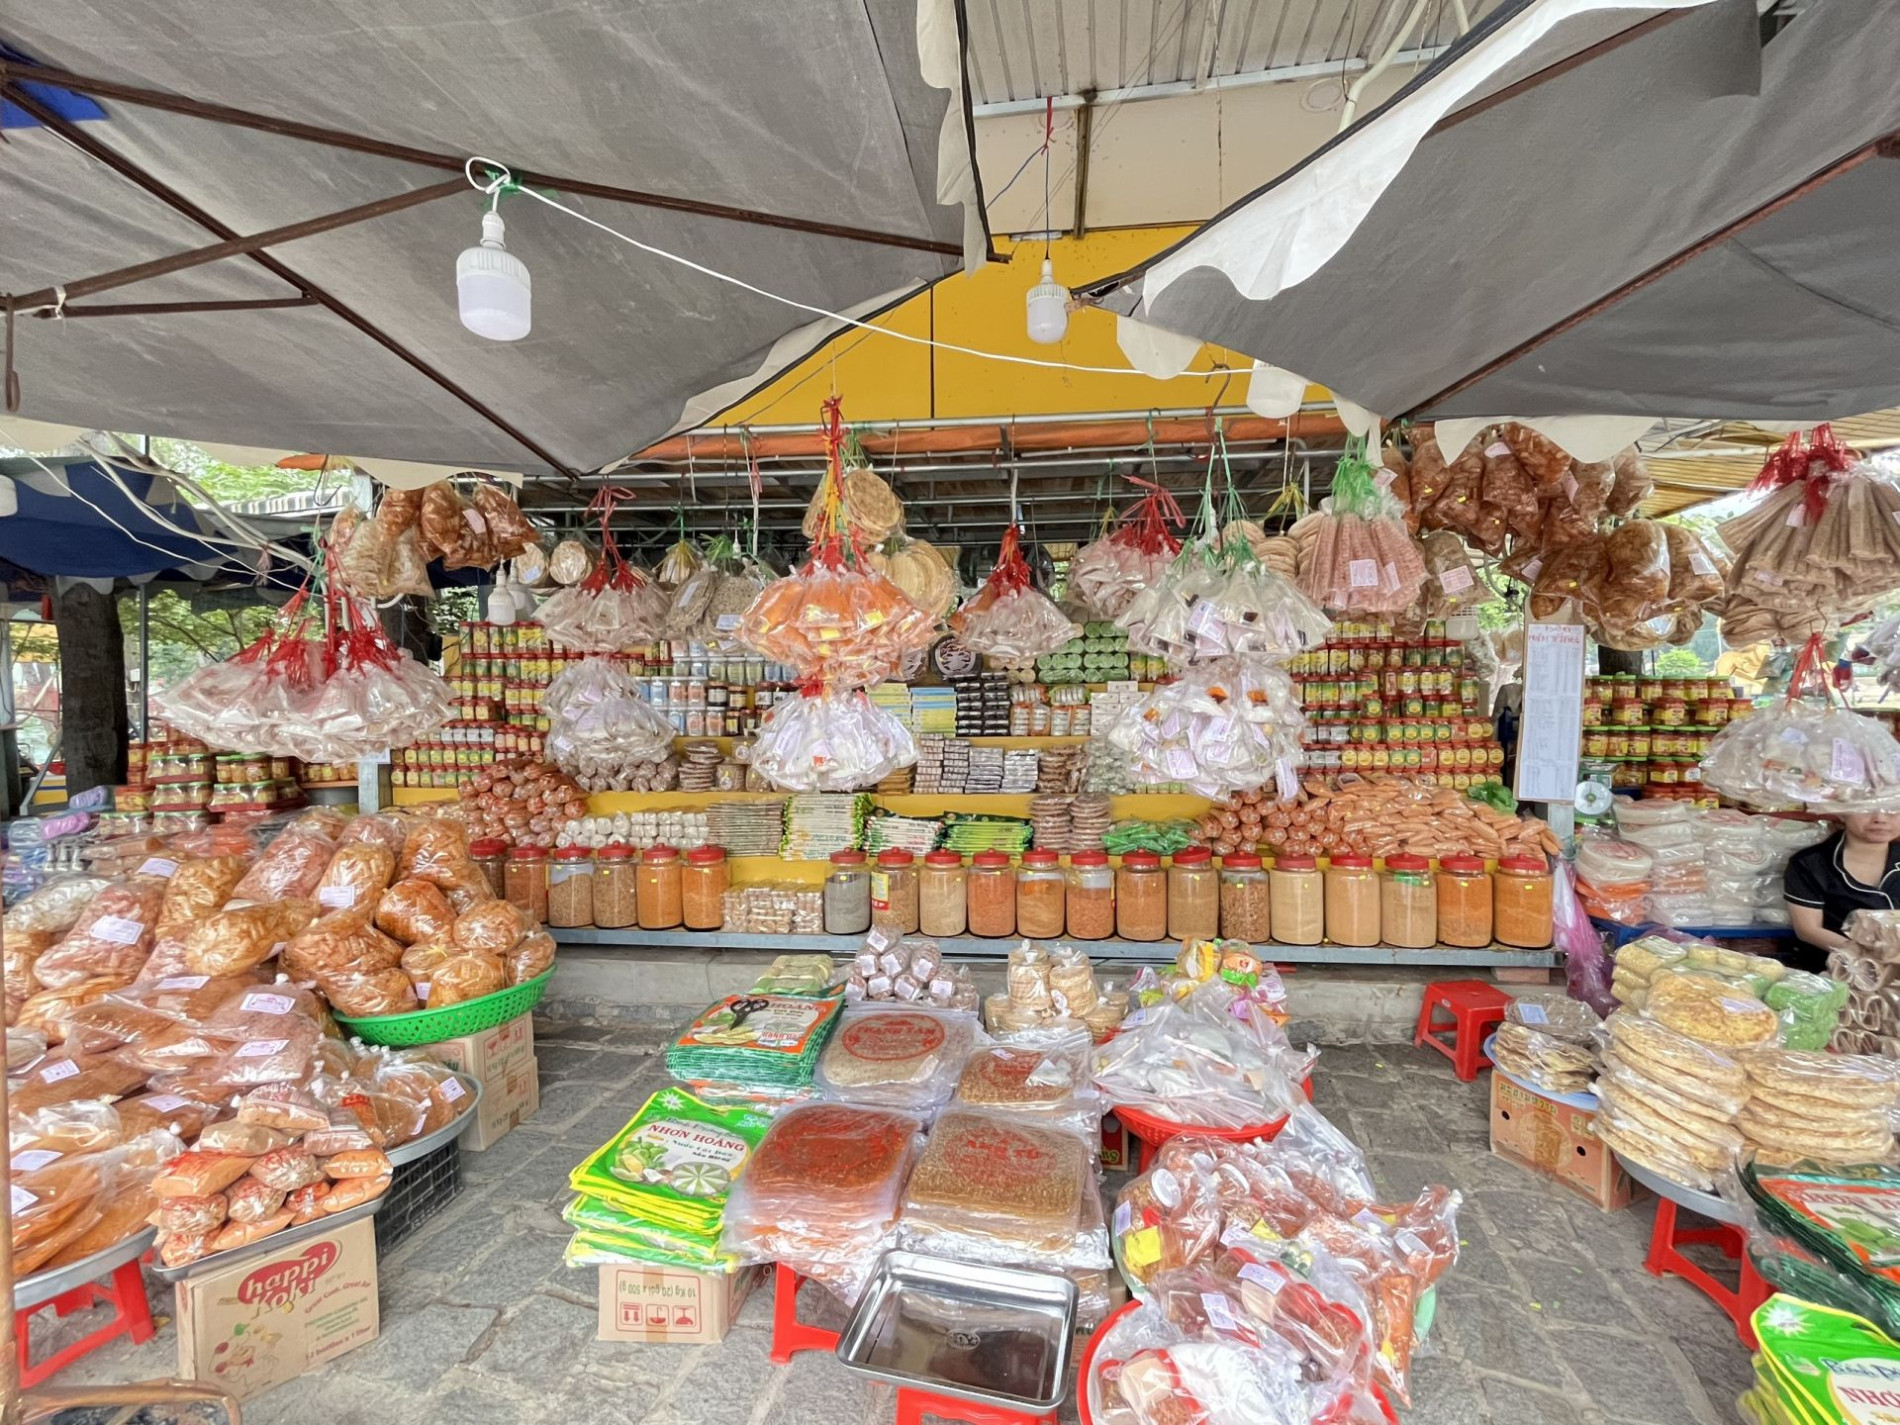 Siết chặt quản lý chất lượng, an toàn vệ sinh thực phẩm tại Khu du lịch núi Bà Đen - Báo Tây Ninh Online